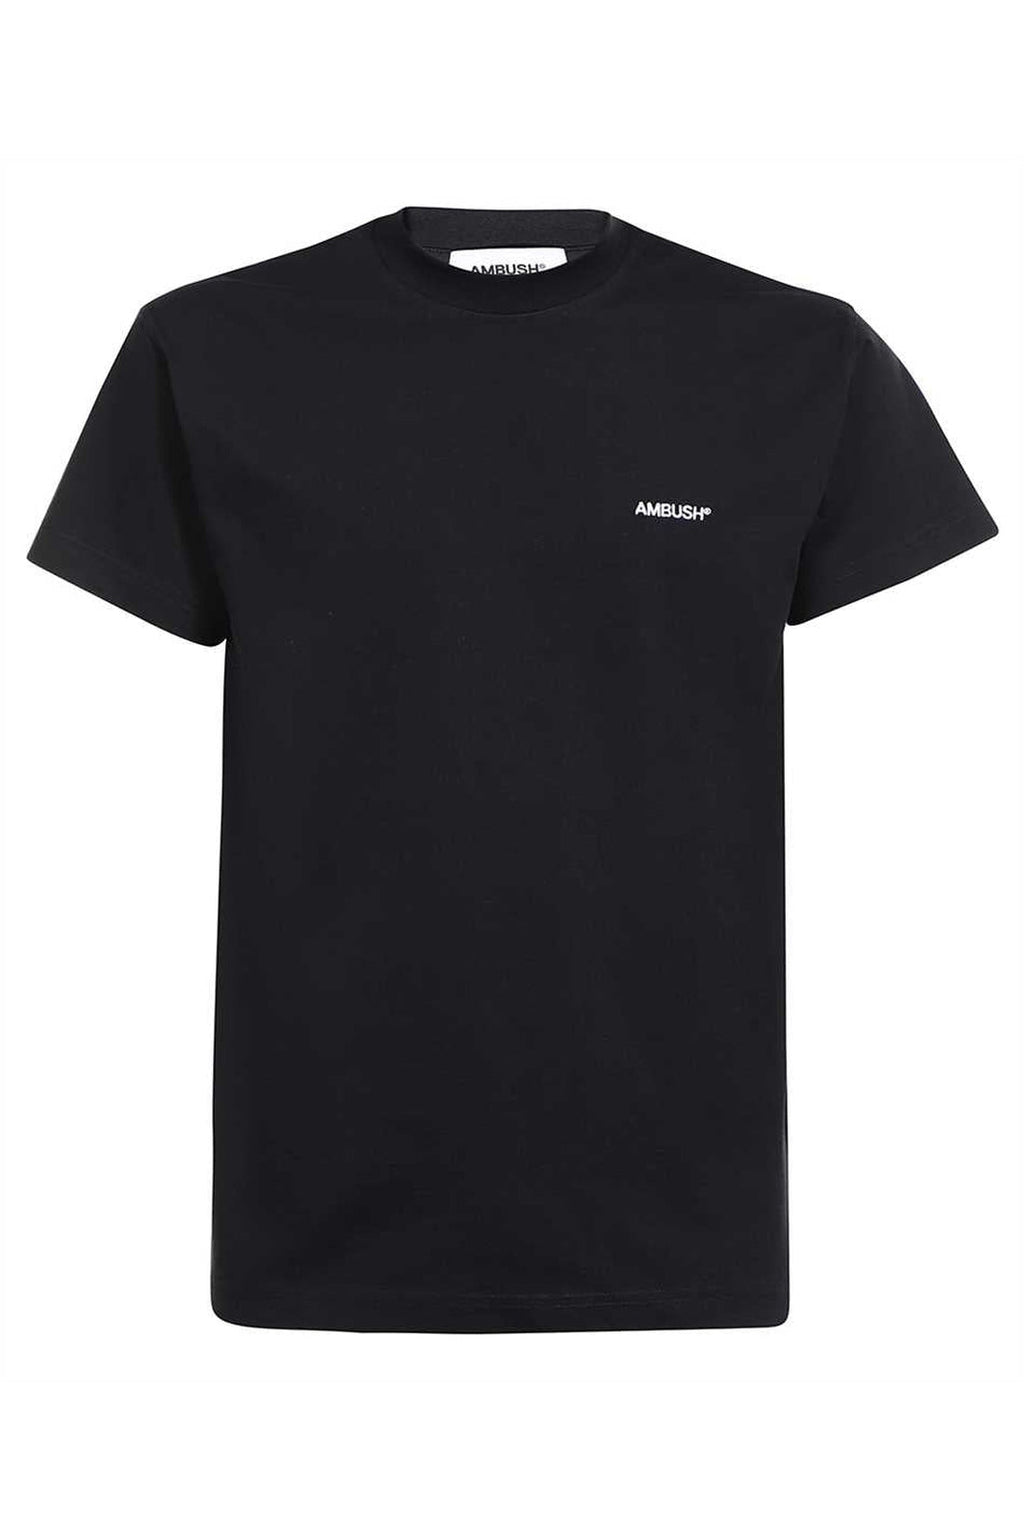 AMBUSH-OUTLET-SALE-Logo cotton t-shirt-ARCHIVIST